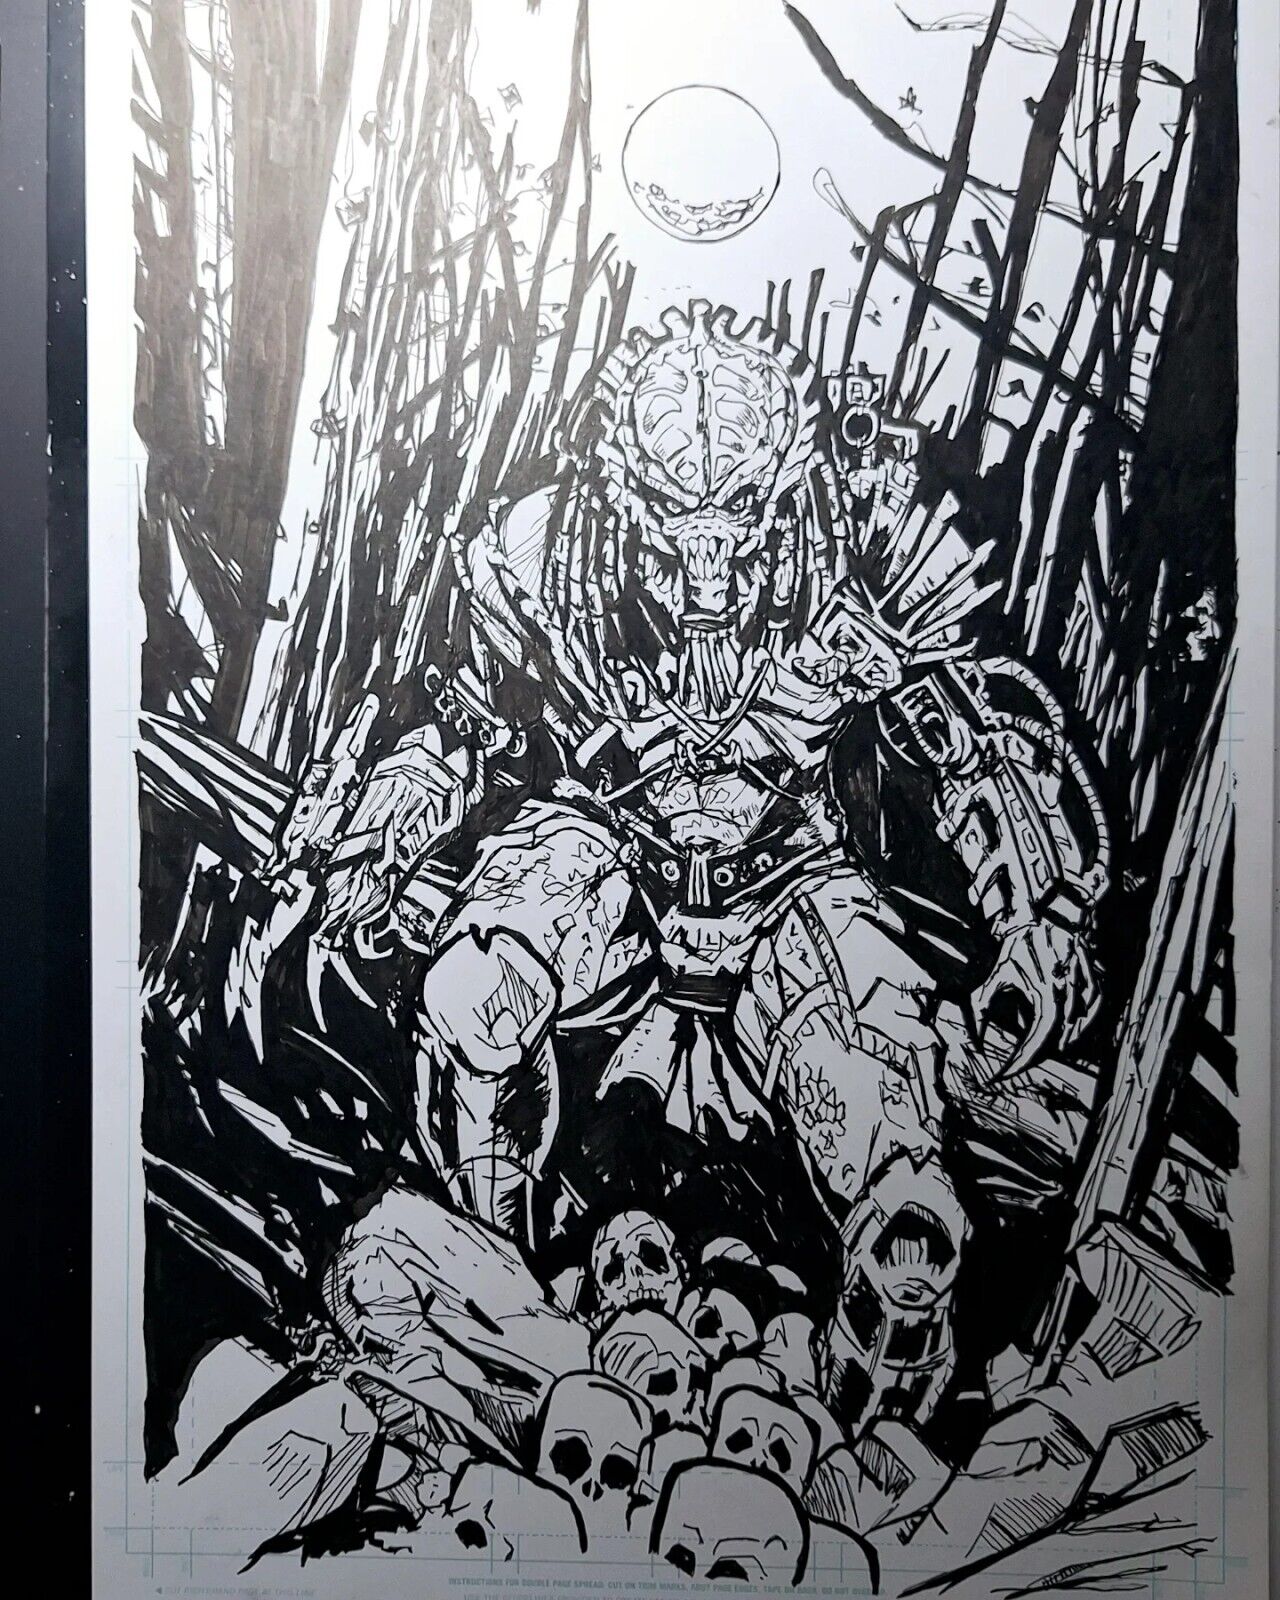 Predator Comic Art 11x17 Art Original Art Signed by Artist Michael Fulcher